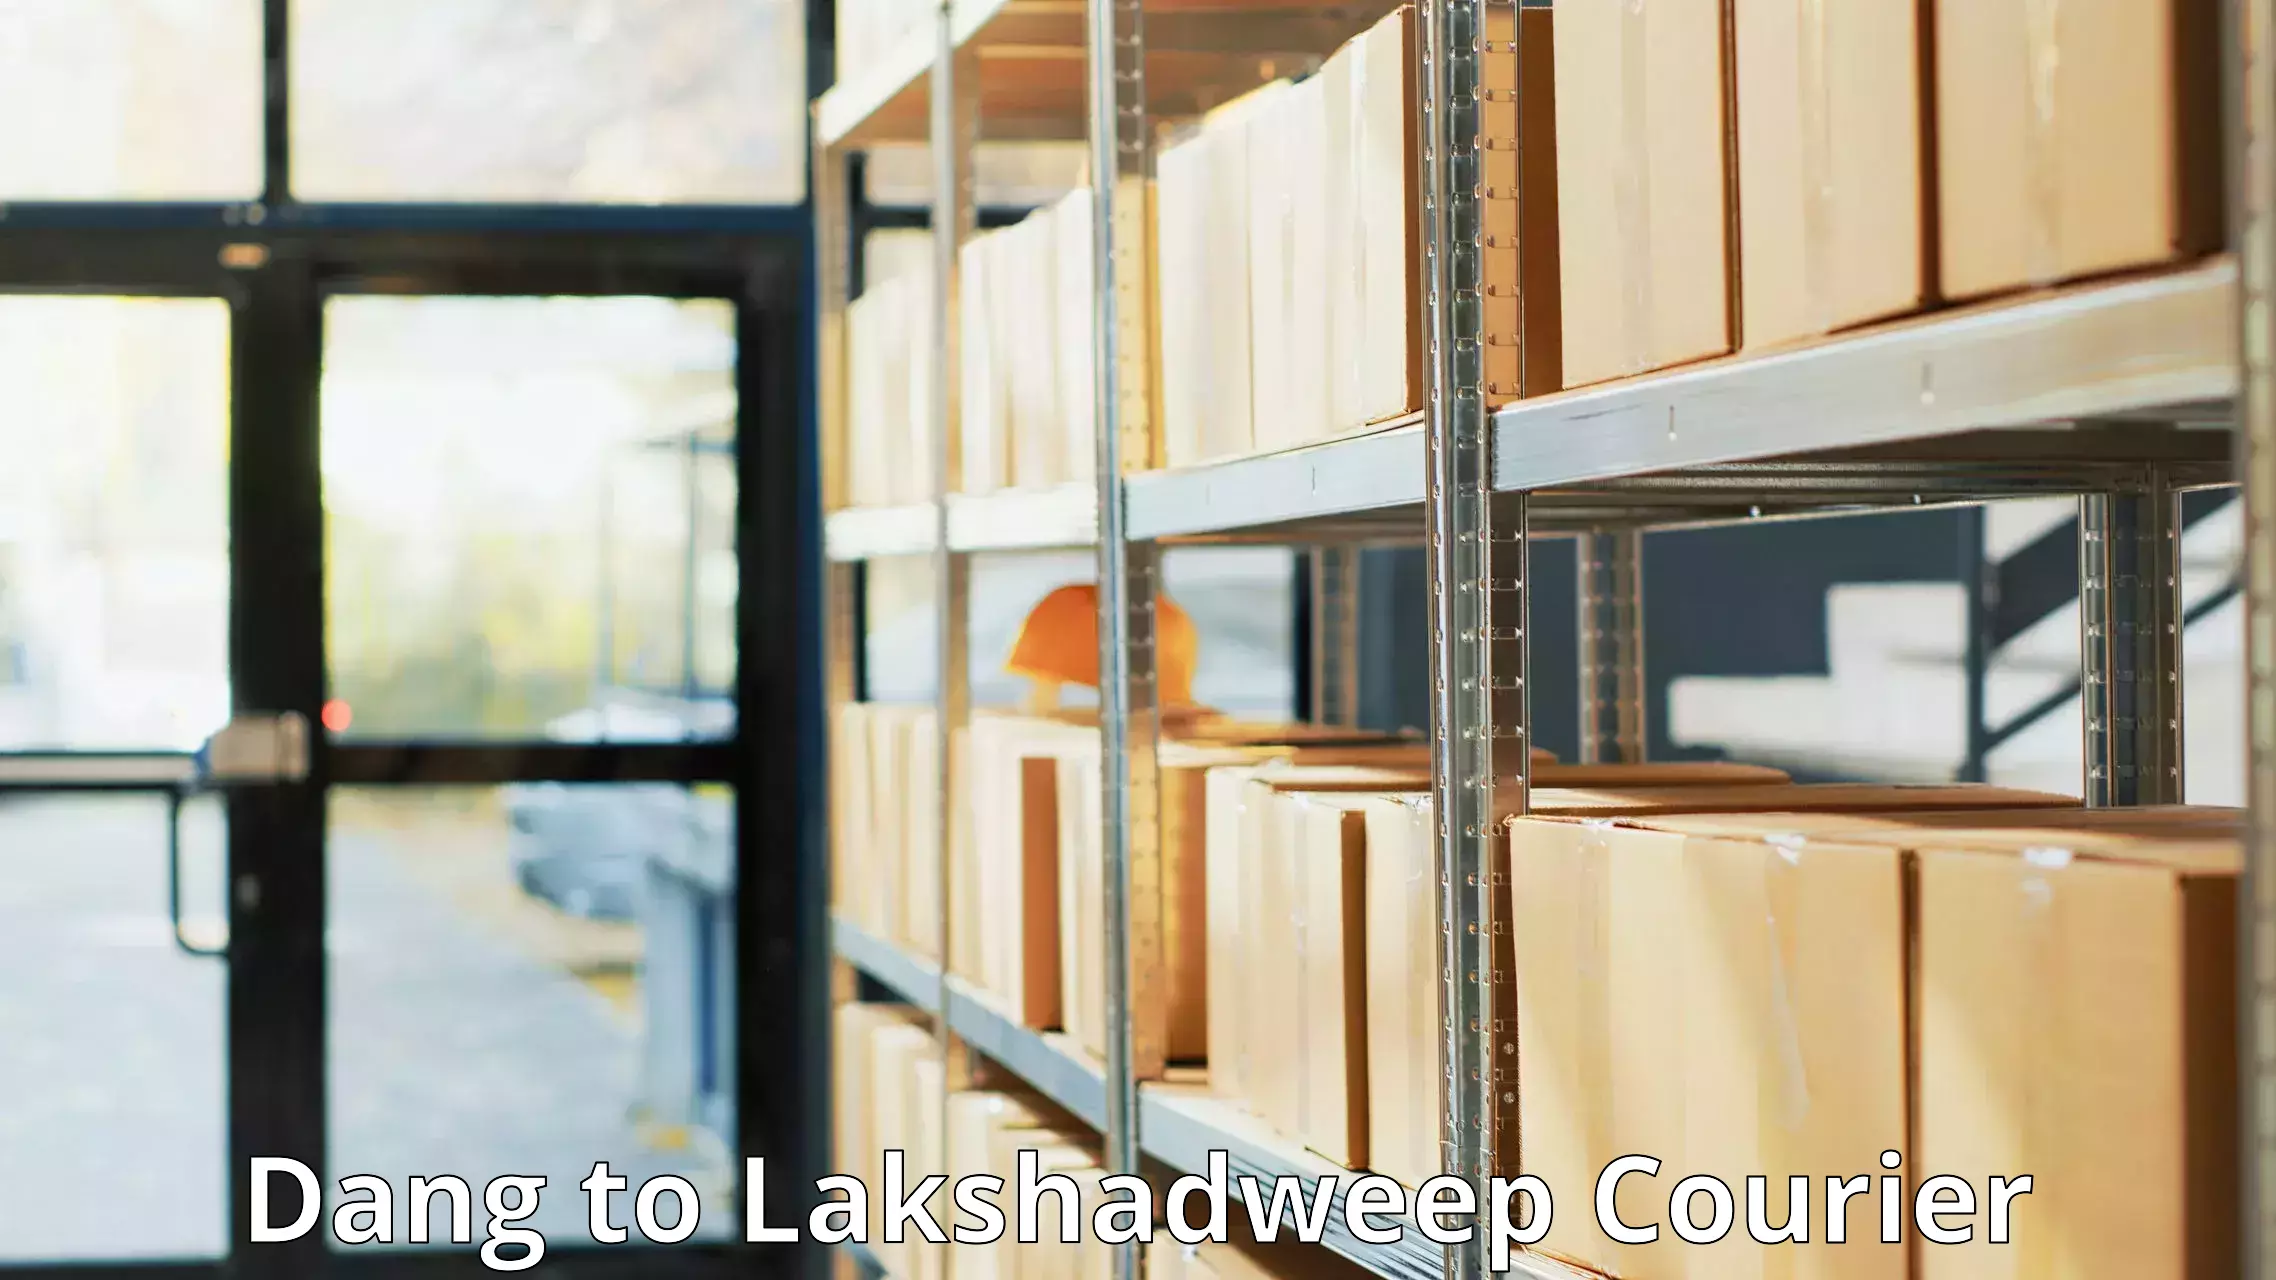 Advanced shipping network Dang to Lakshadweep